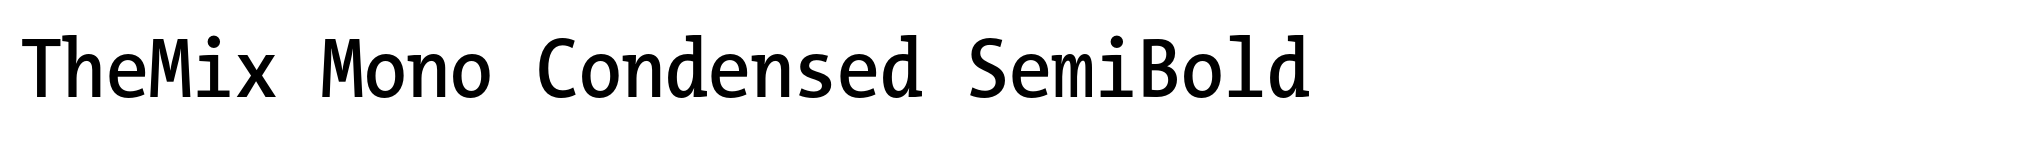 TheMix Mono Condensed SemiBold image